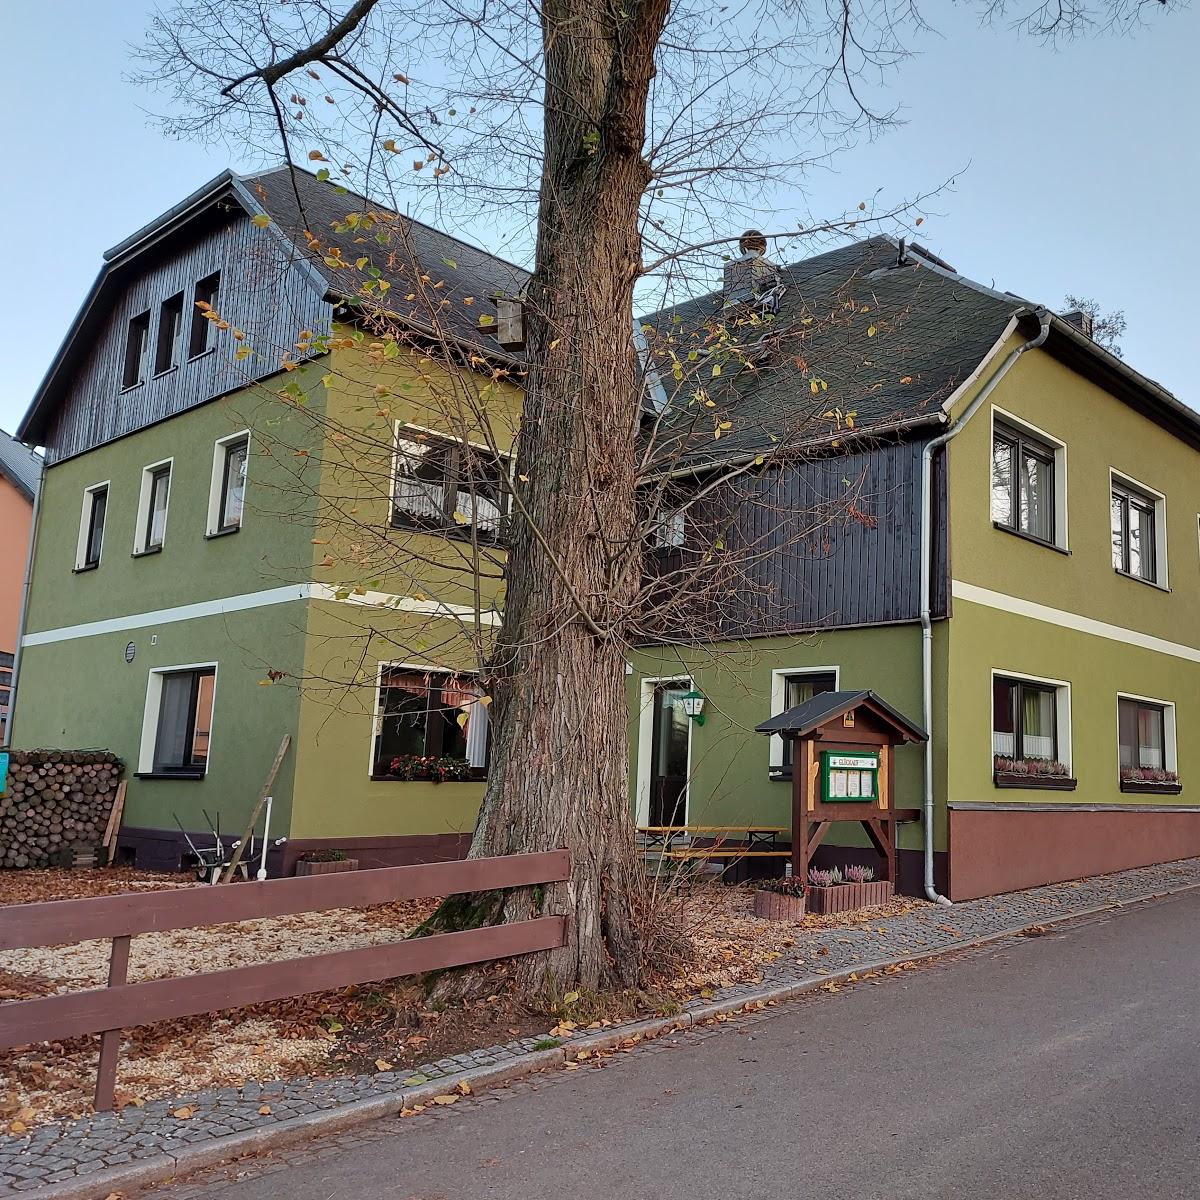 Restaurant "Grüner Garten" in Zwönitz